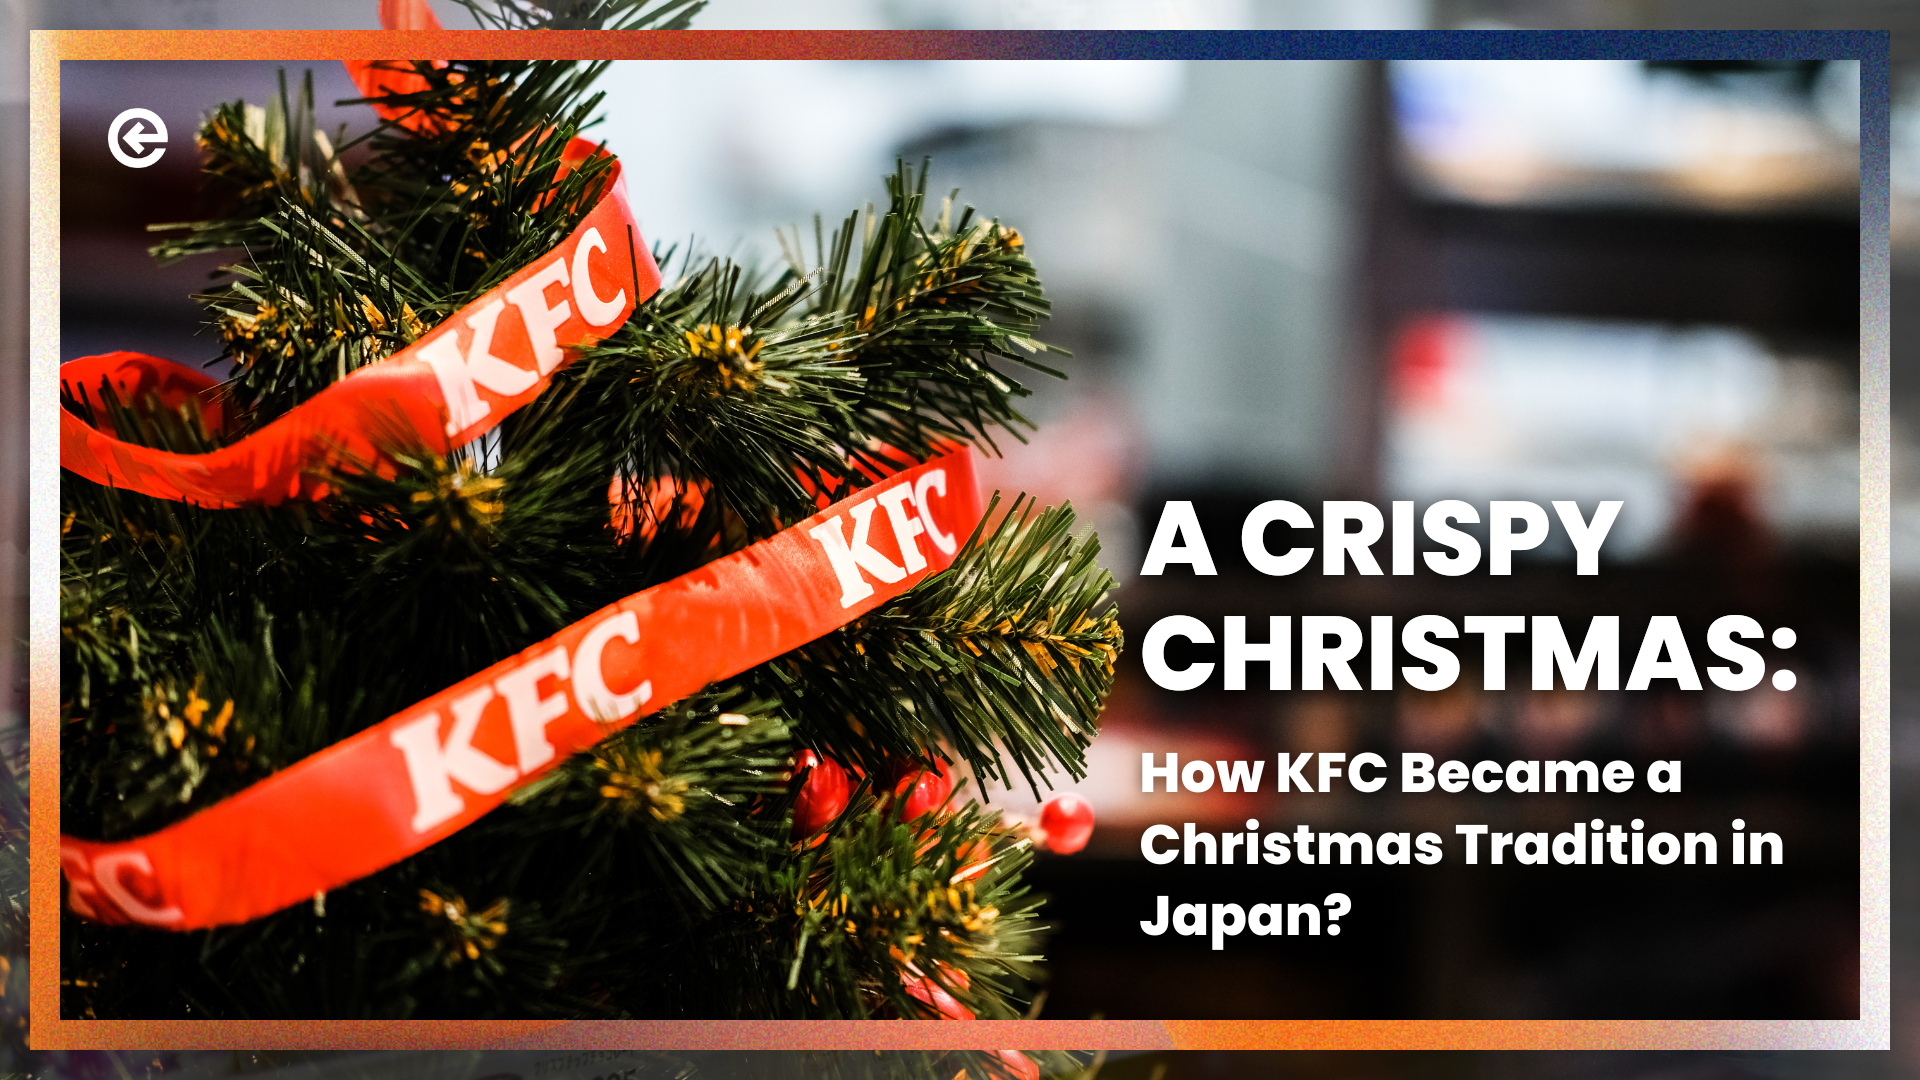 कैसे केएफसी जापान में एक क्रिसमस परंपरा बन गया?